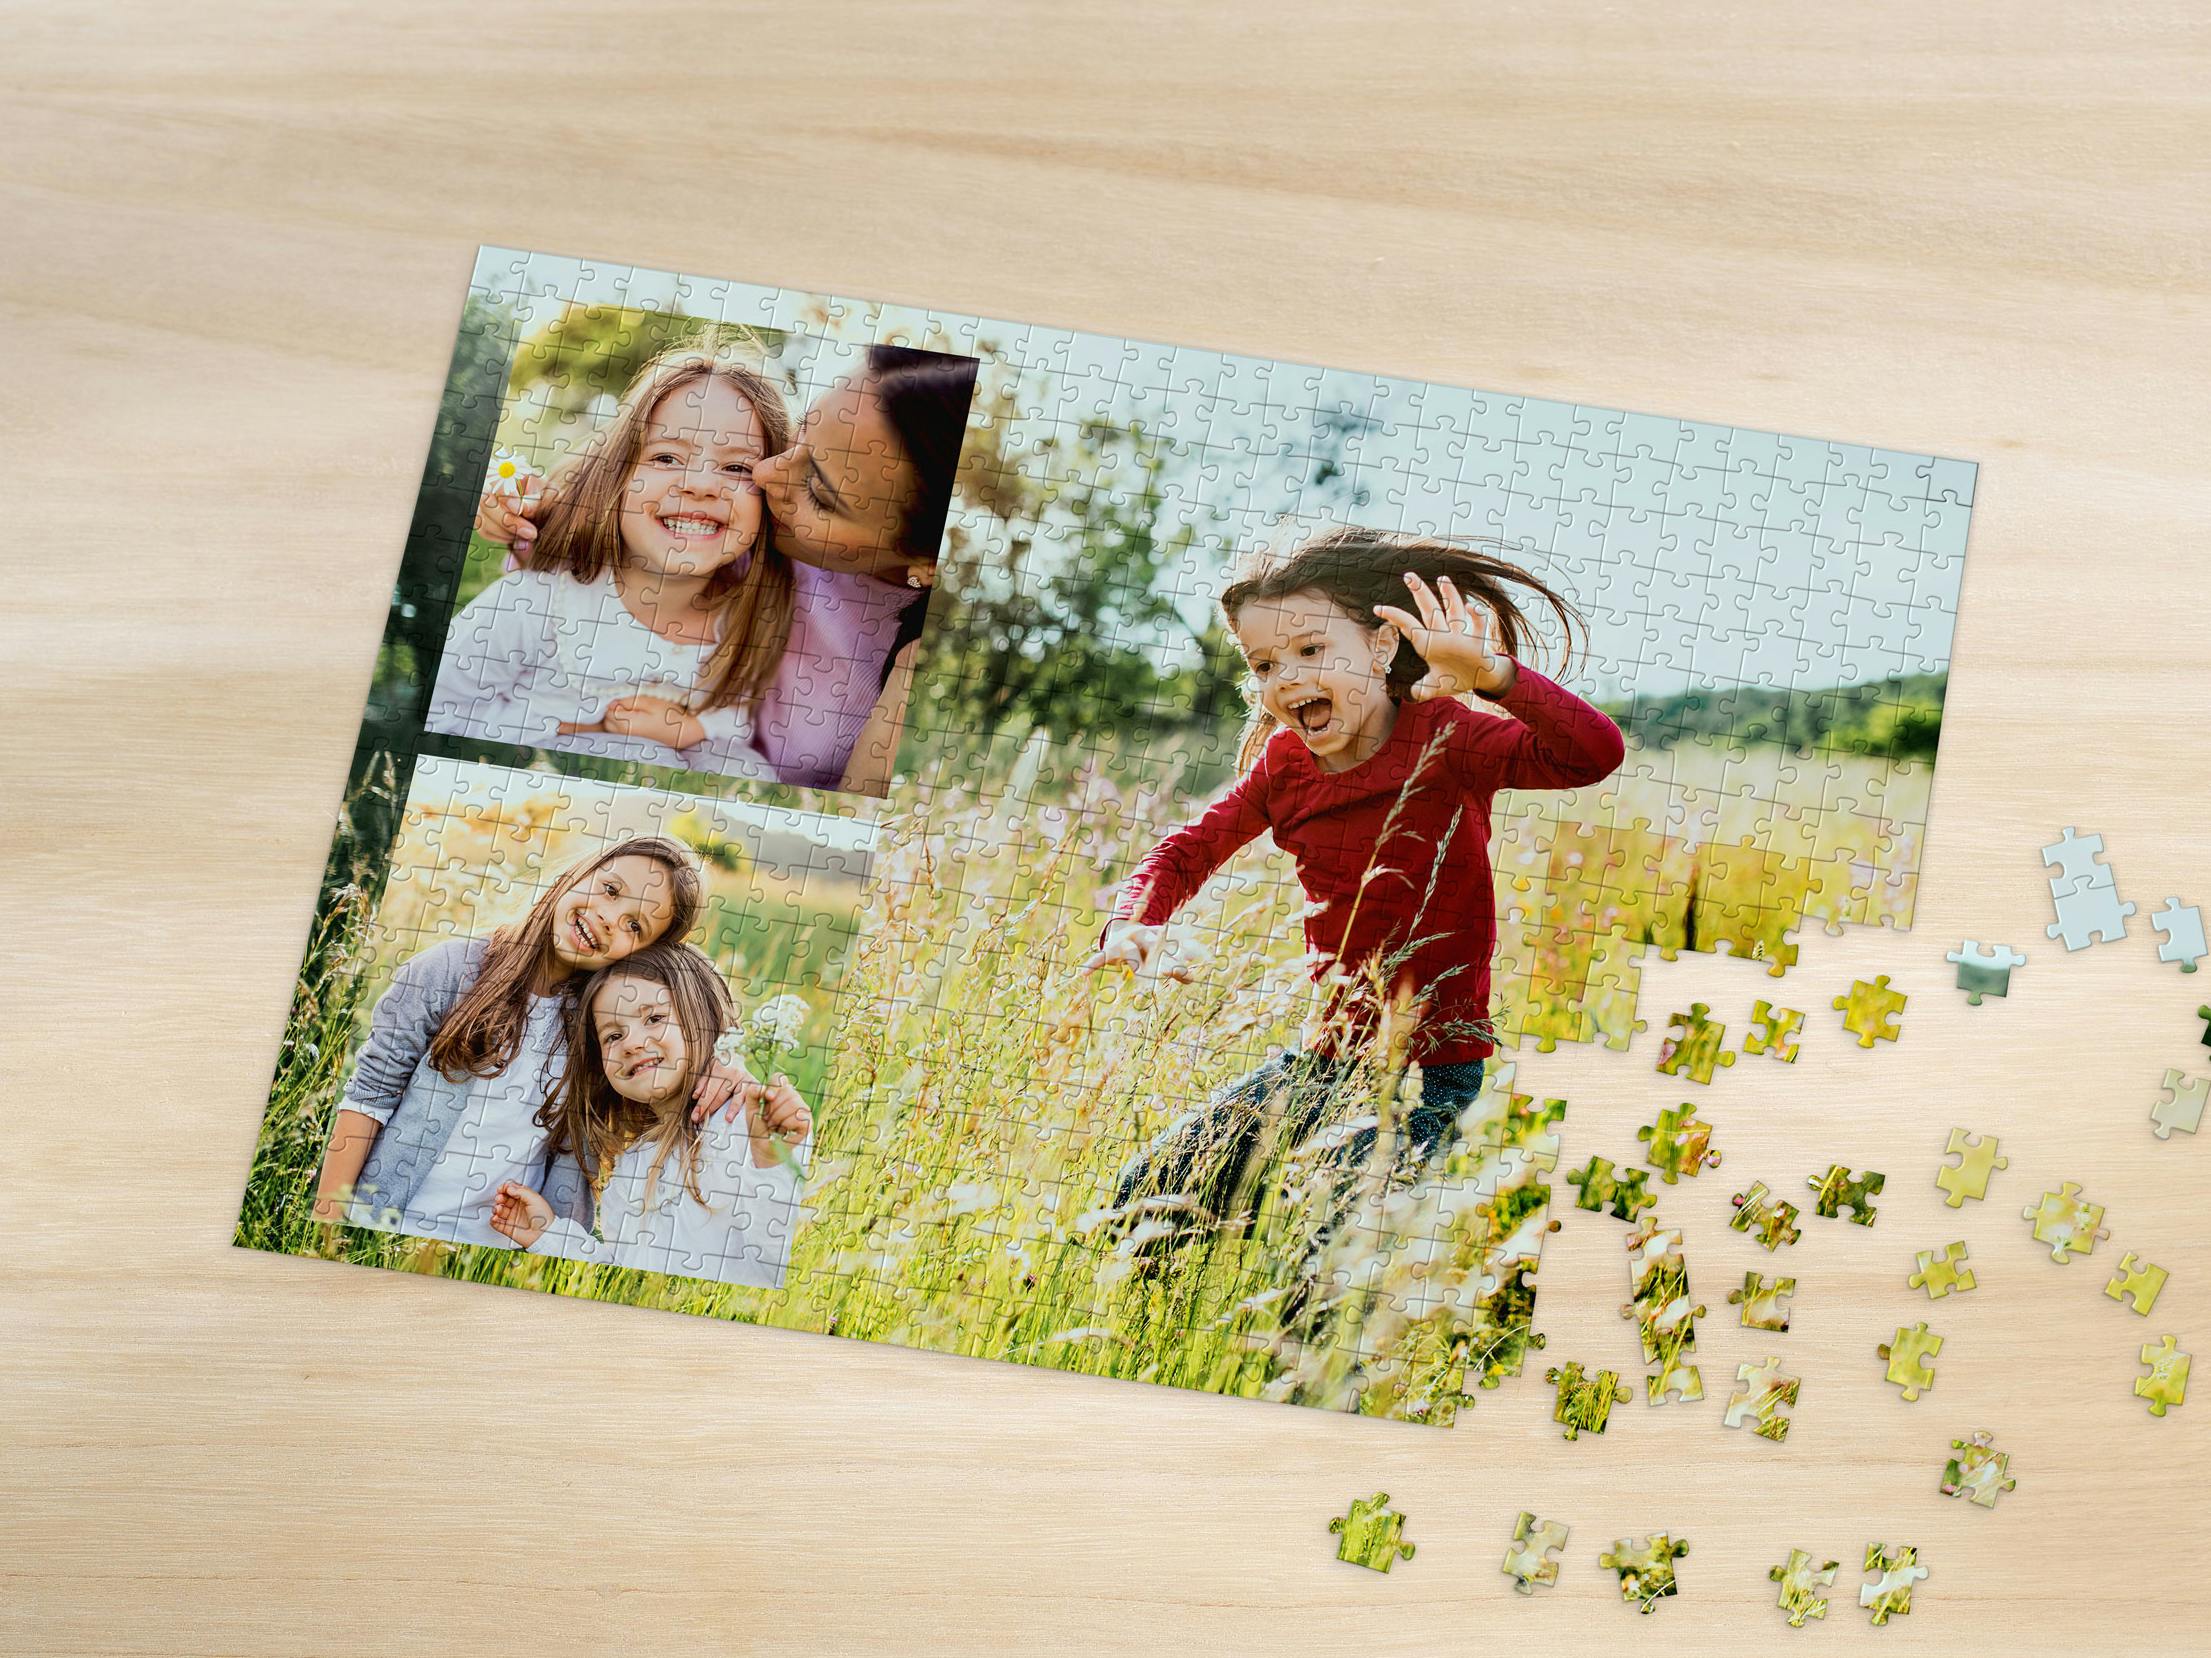 Fotopuslespil med collage af flere familiefotos i foråret på et bord